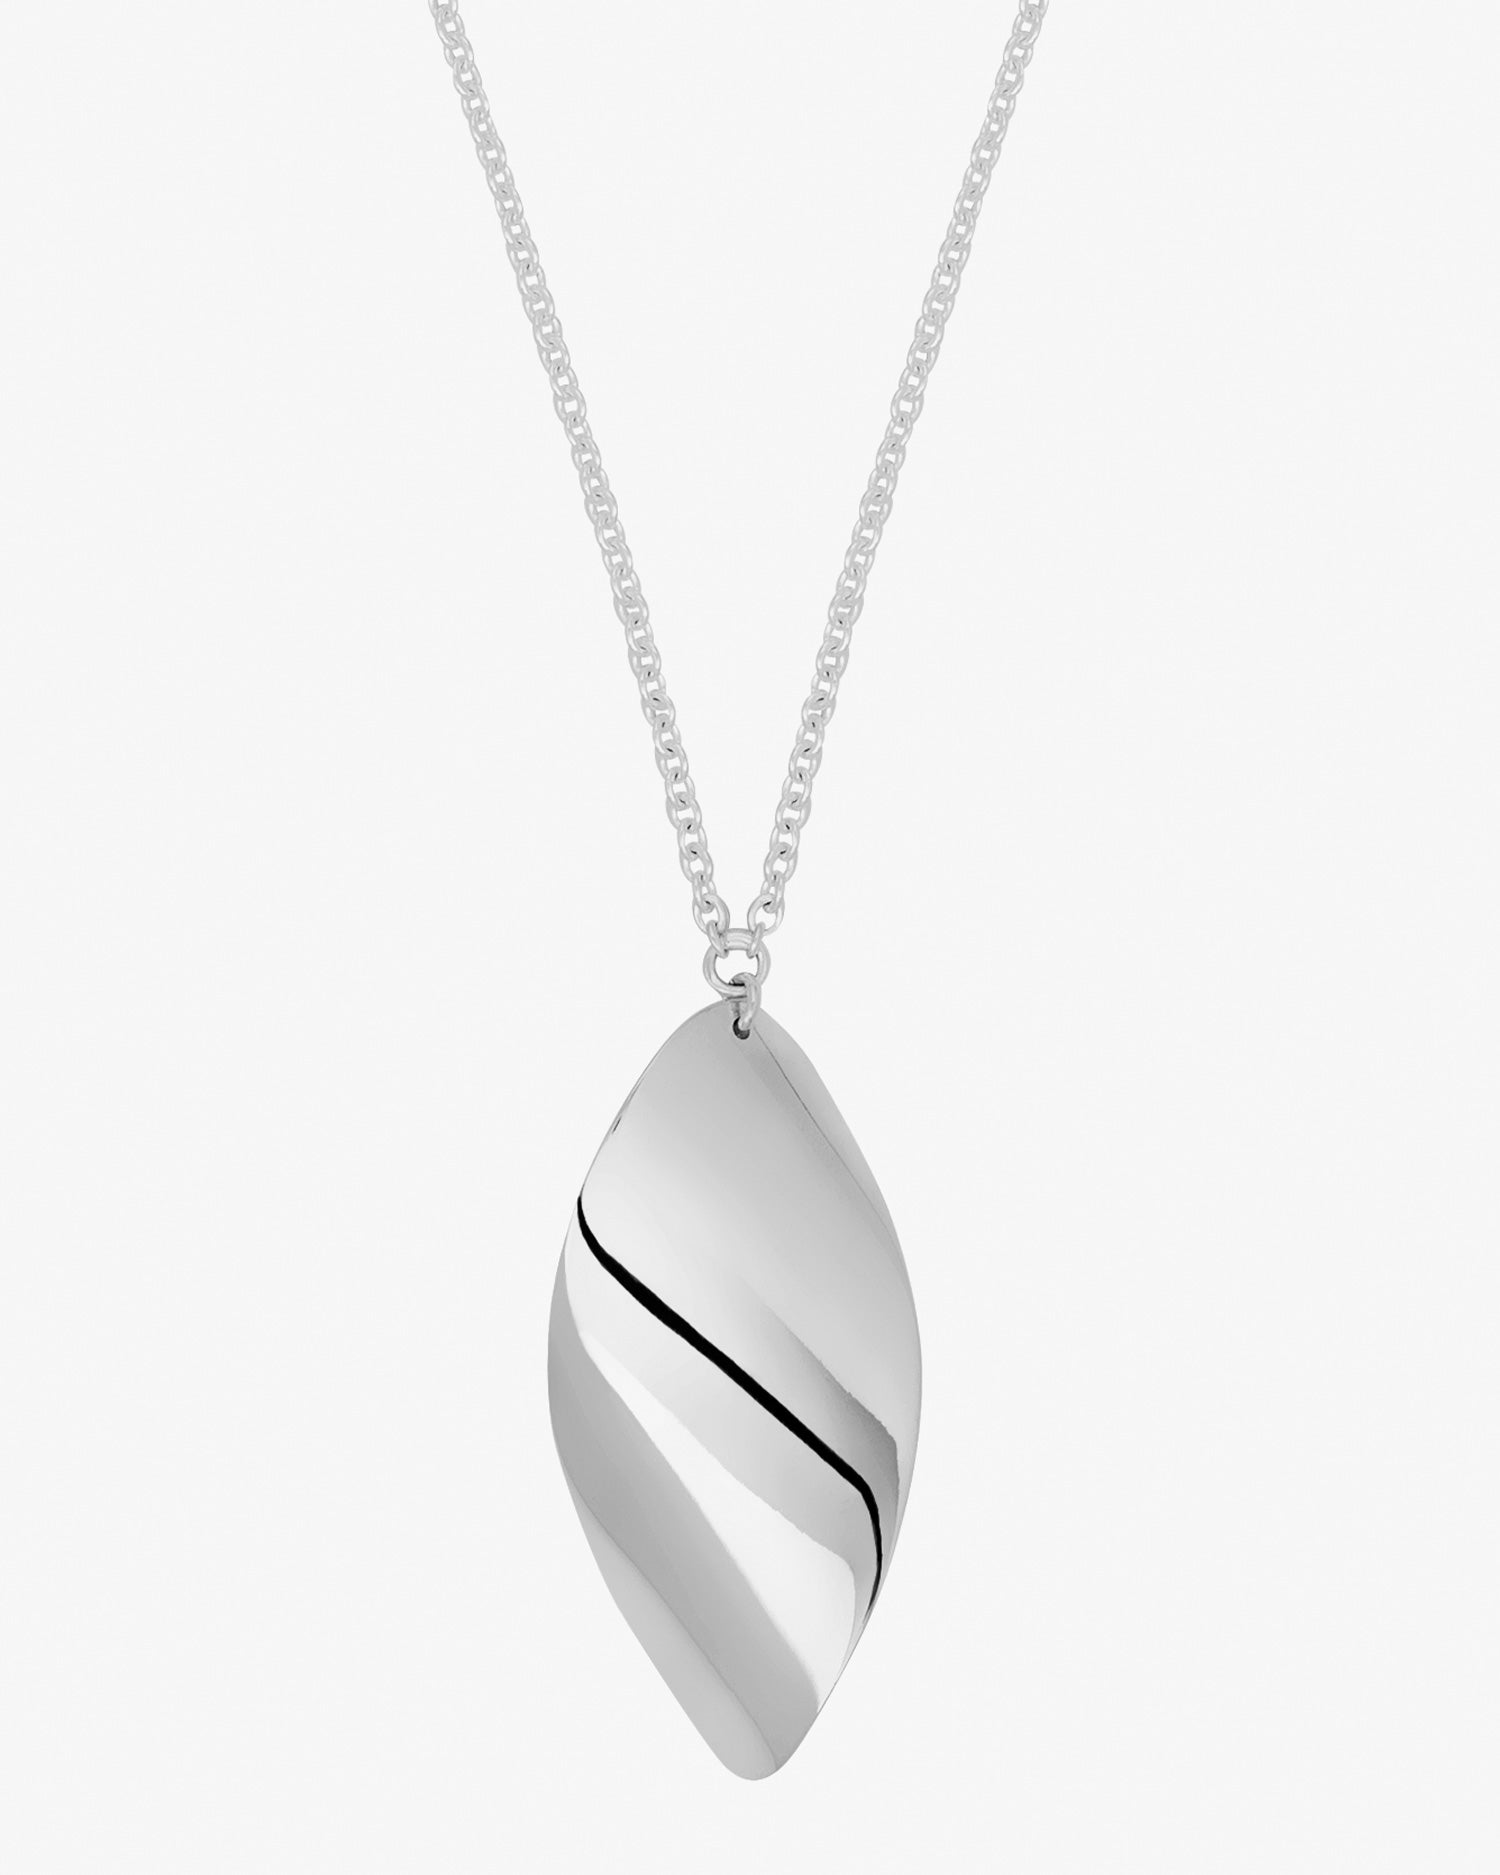 Aqua-necklace-01